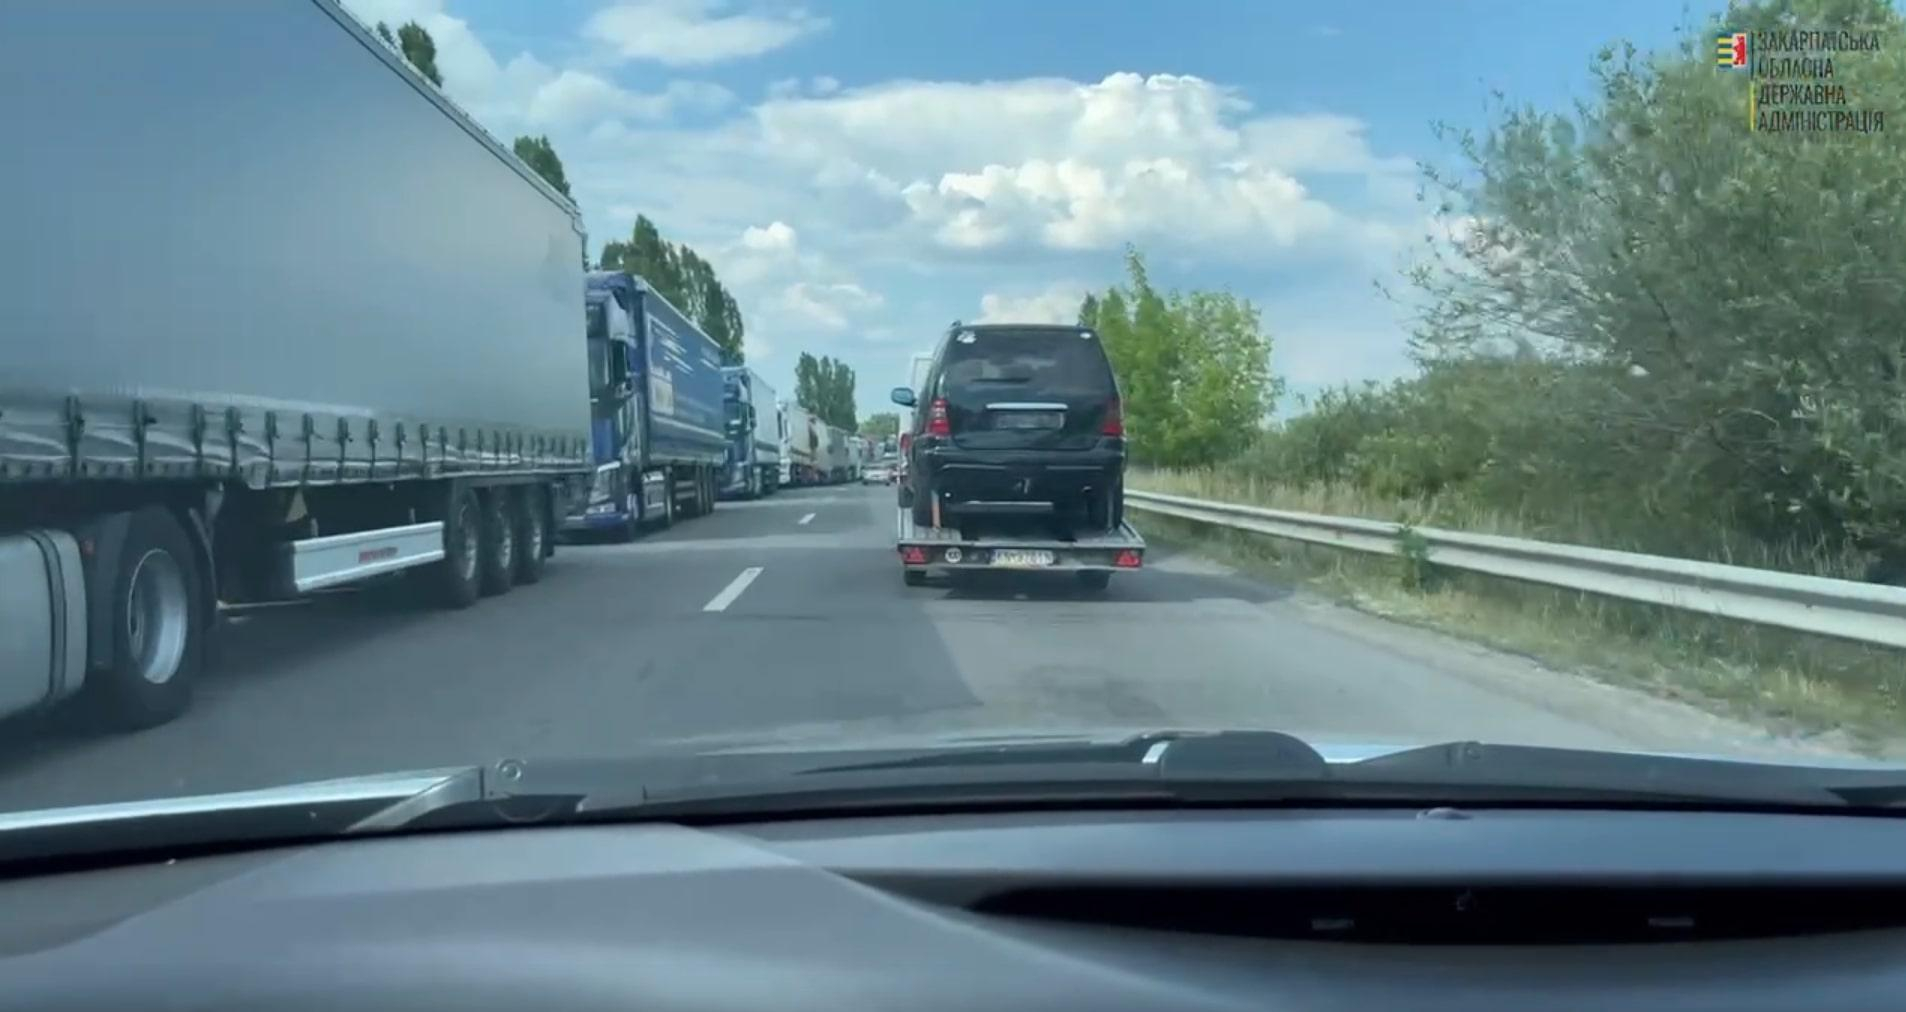 Очереди на несколько километров: на границе с Венгрией стоят сотни автомобилей